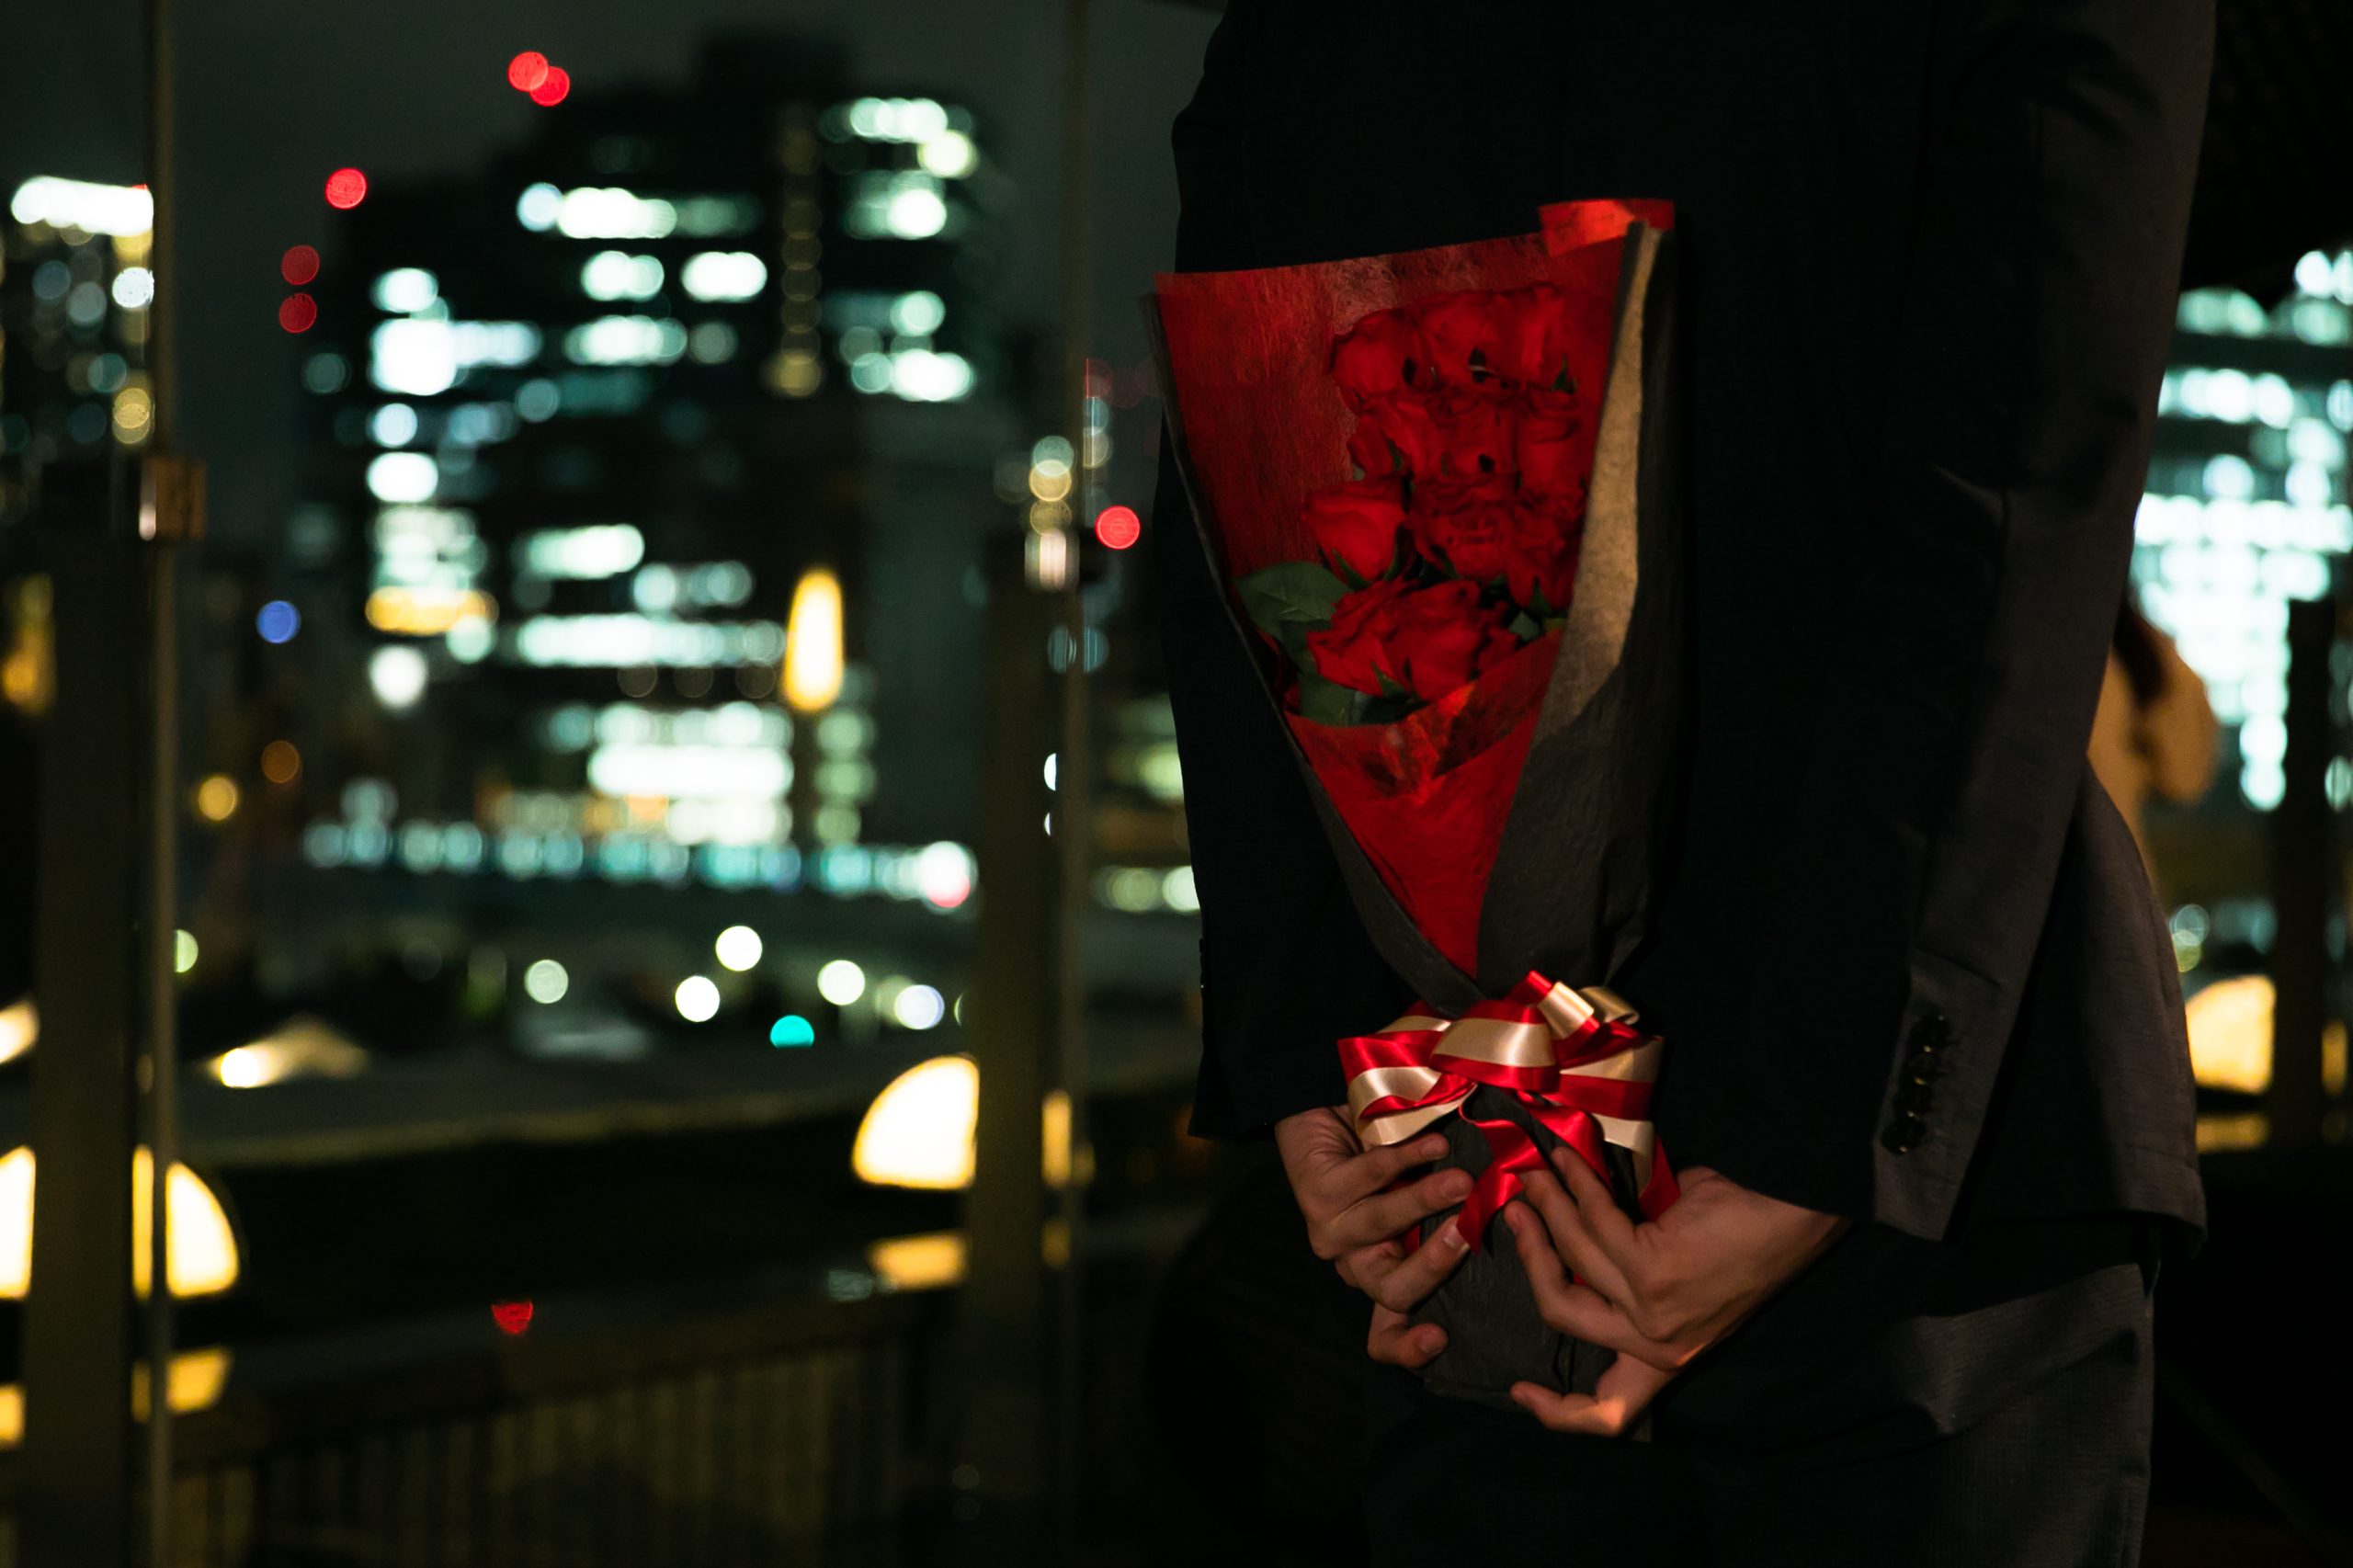 プロポーズ用のバラの花束を体の後ろで隠すように持つ男性